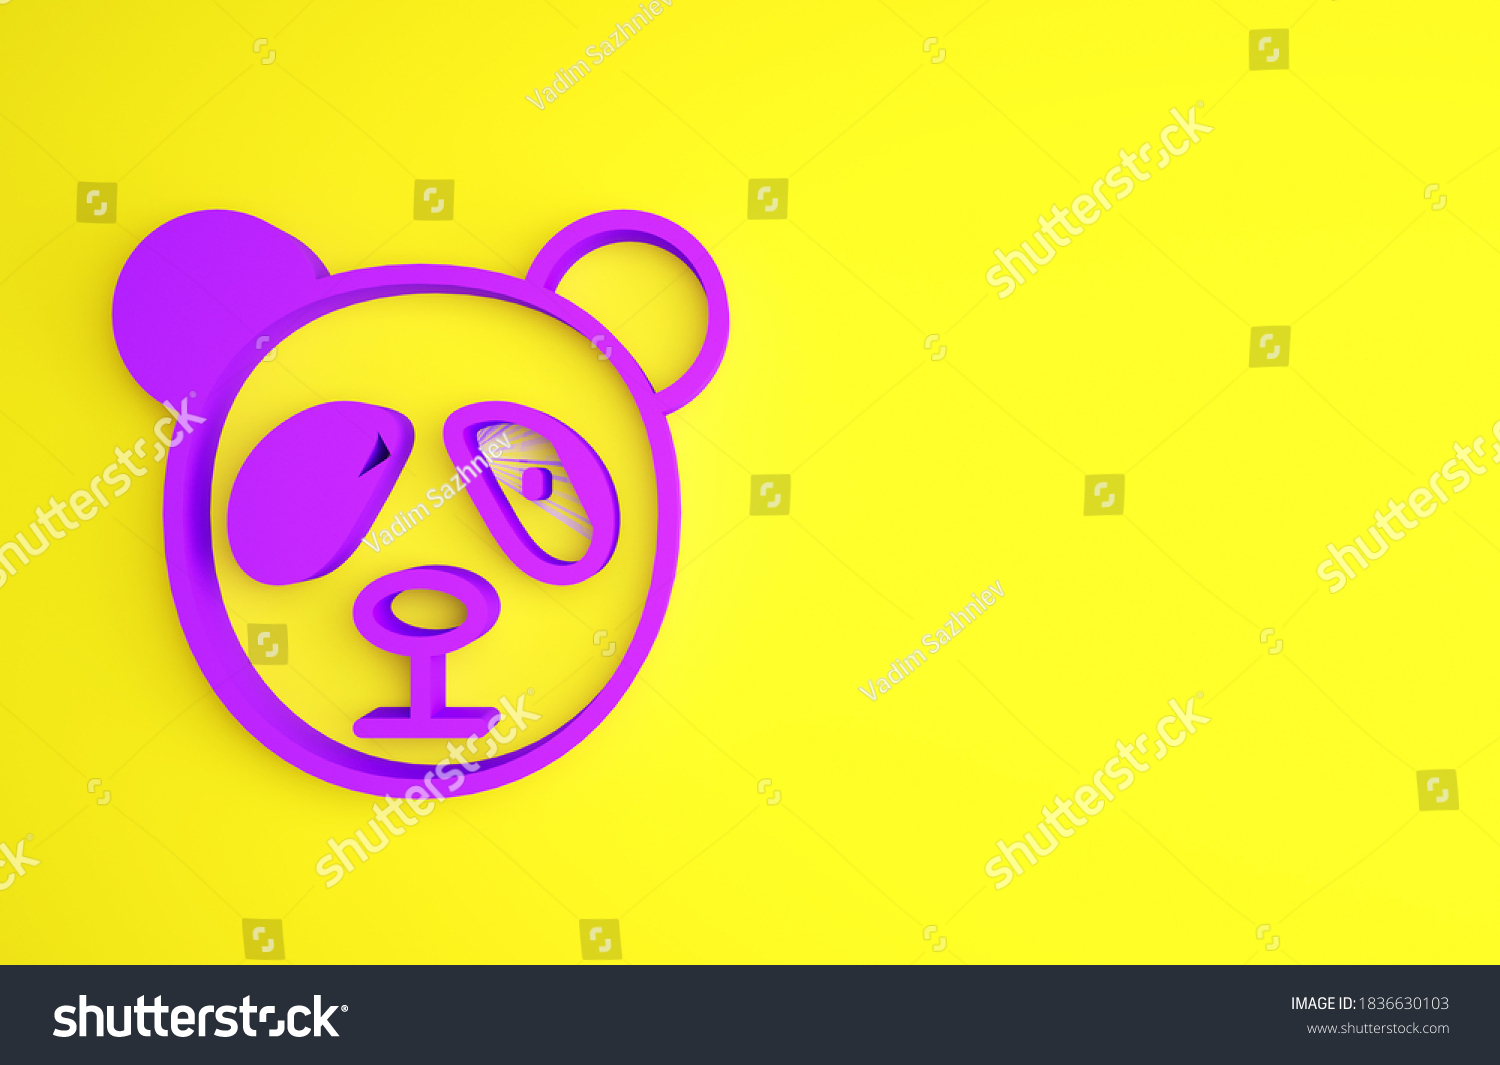 黄色い背景に紫のかわいいパンダの顔のアイコン 動物の記号 ミニマリズムのコンセプト 3dイラスト3dレンダリング のイラスト素材 Shutterstock